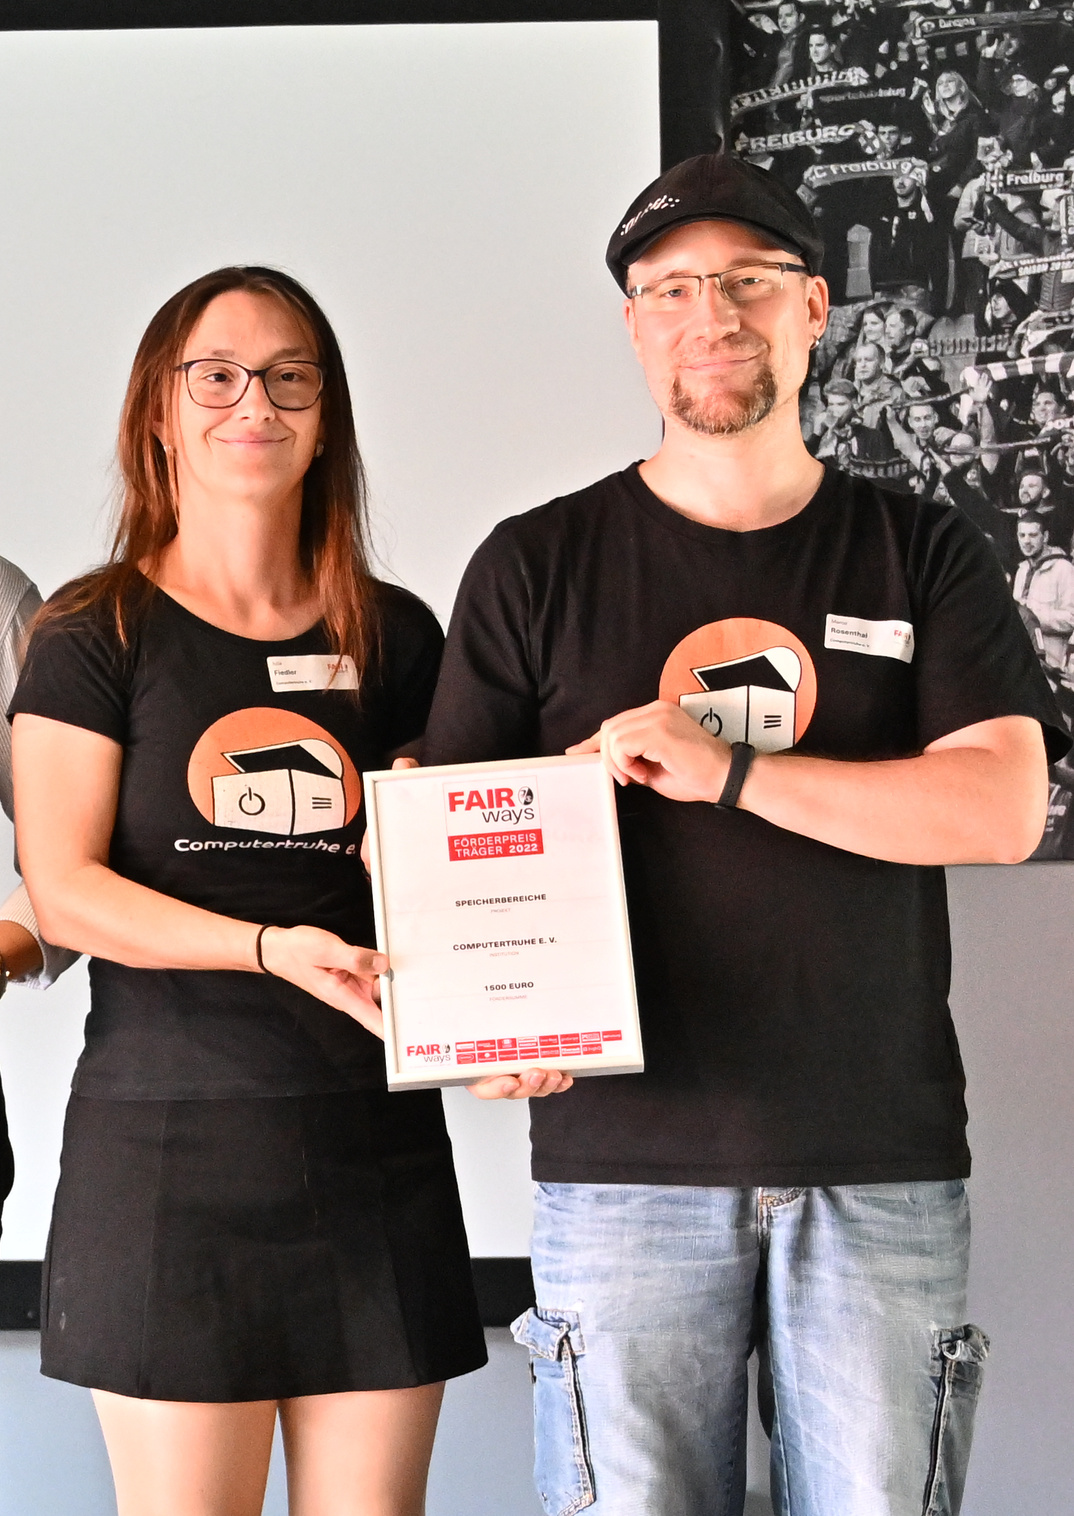 Julia Fiedler und Marco Rosenthal stehen lächelnd auf einer Bühne und halten gemeinsam eine gerahmte Urkunde in den Händen. Beide tragen ein schwarzes T-Shirt mit dem Logo der „Computertruhe“.